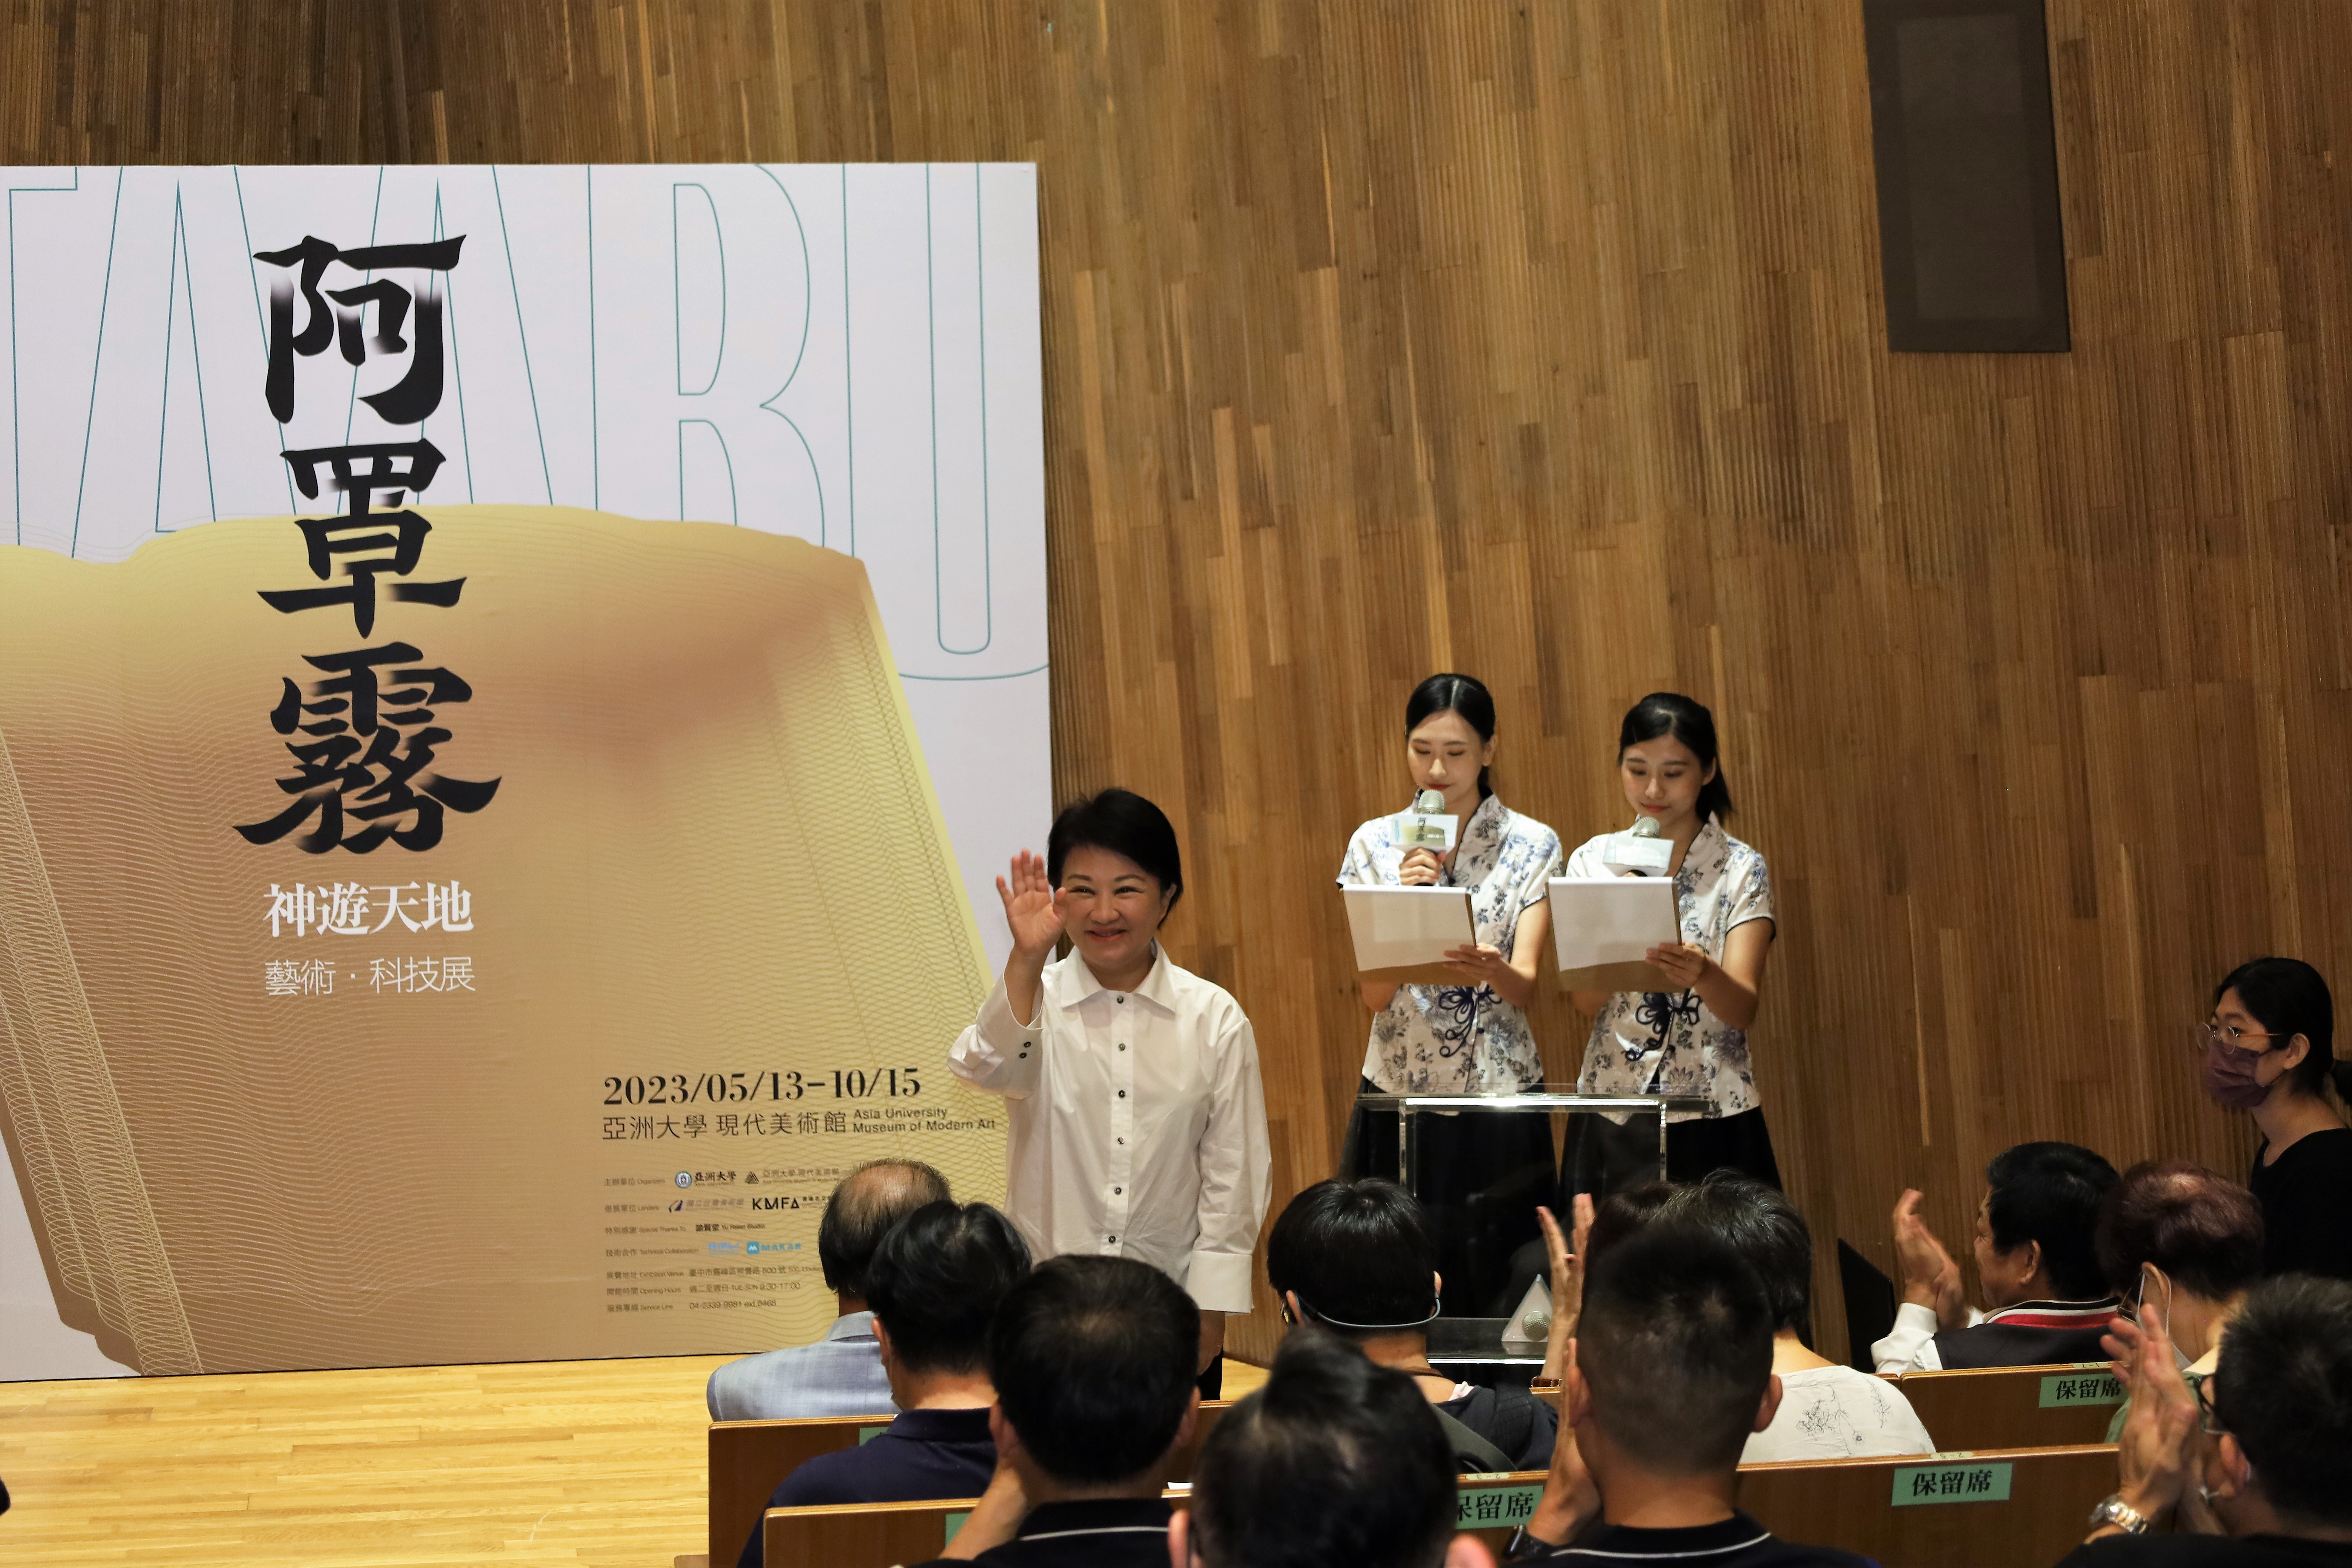 臺中市市長盧秀燕支持發展藝術文化，出席「阿罩霧神遊天地—藝術・科技特展」開幕時說，今年她已第3次來亞美館。